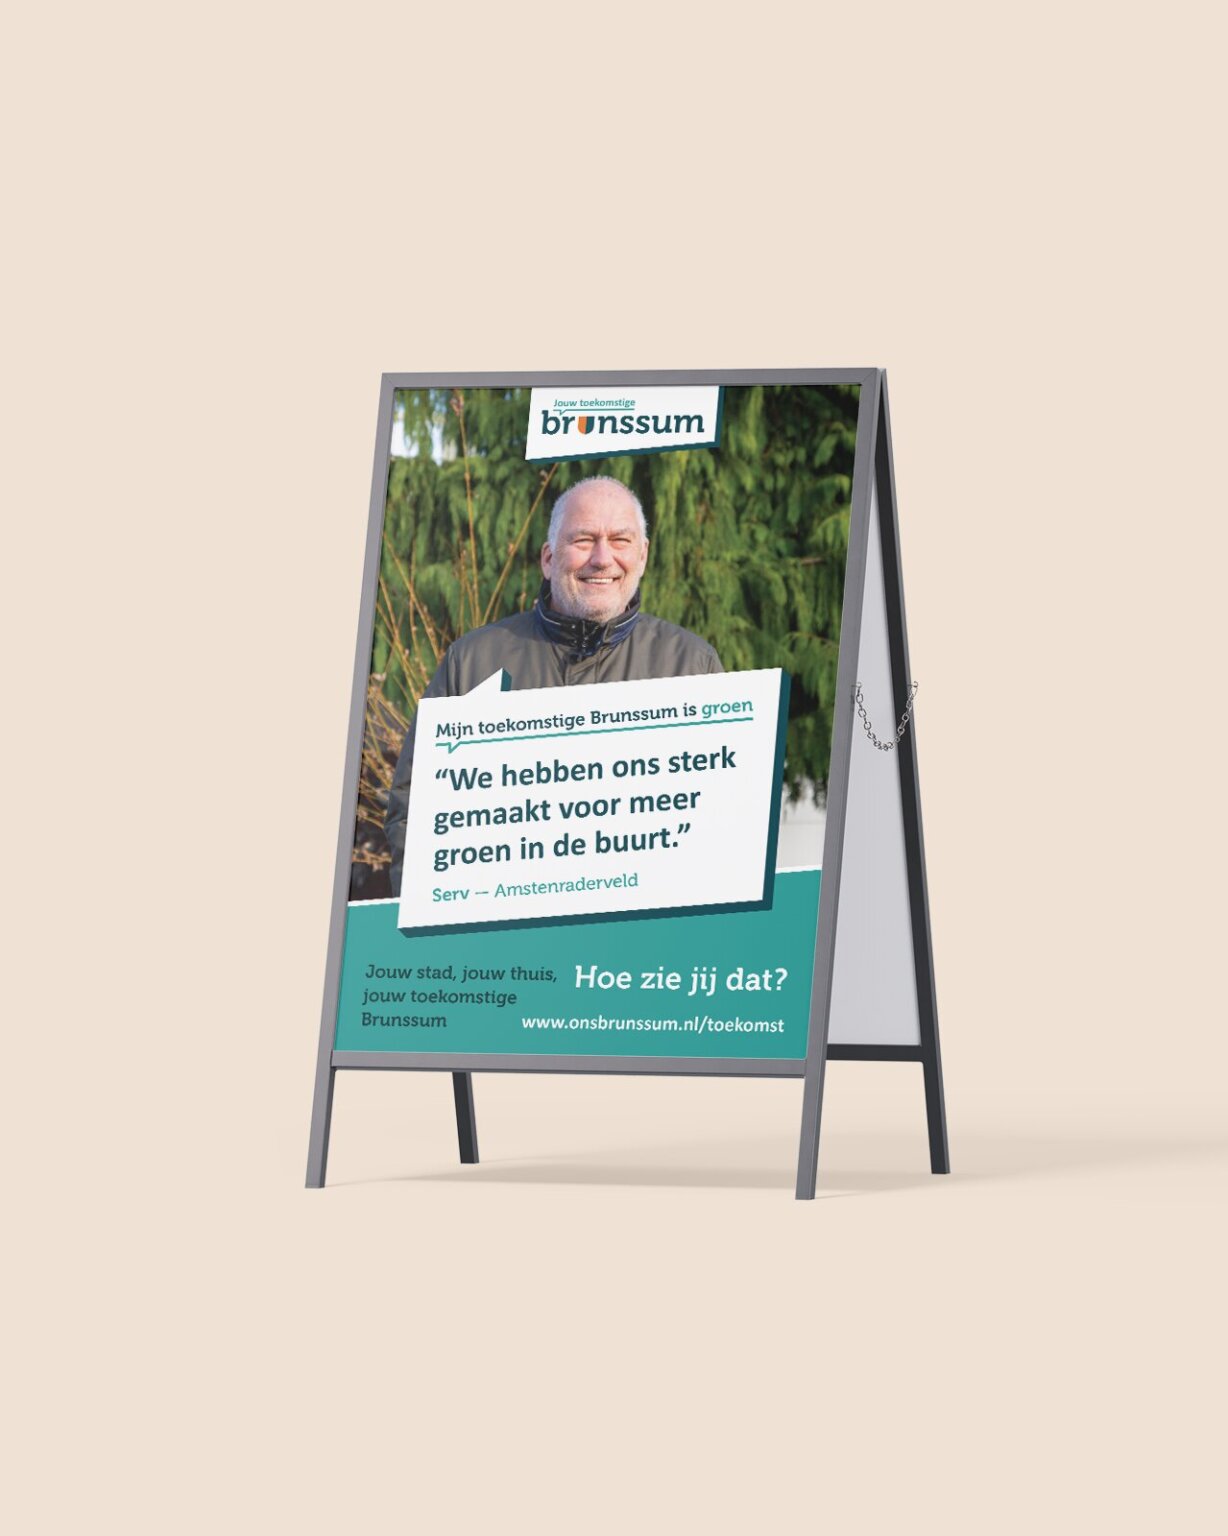 Ezeldisplay met een poster met een lachende man en Nederlandse tekst over groene initiatieven in Brunssum, ter promotie van de visie van Jouw Toekomstige Brunssum.